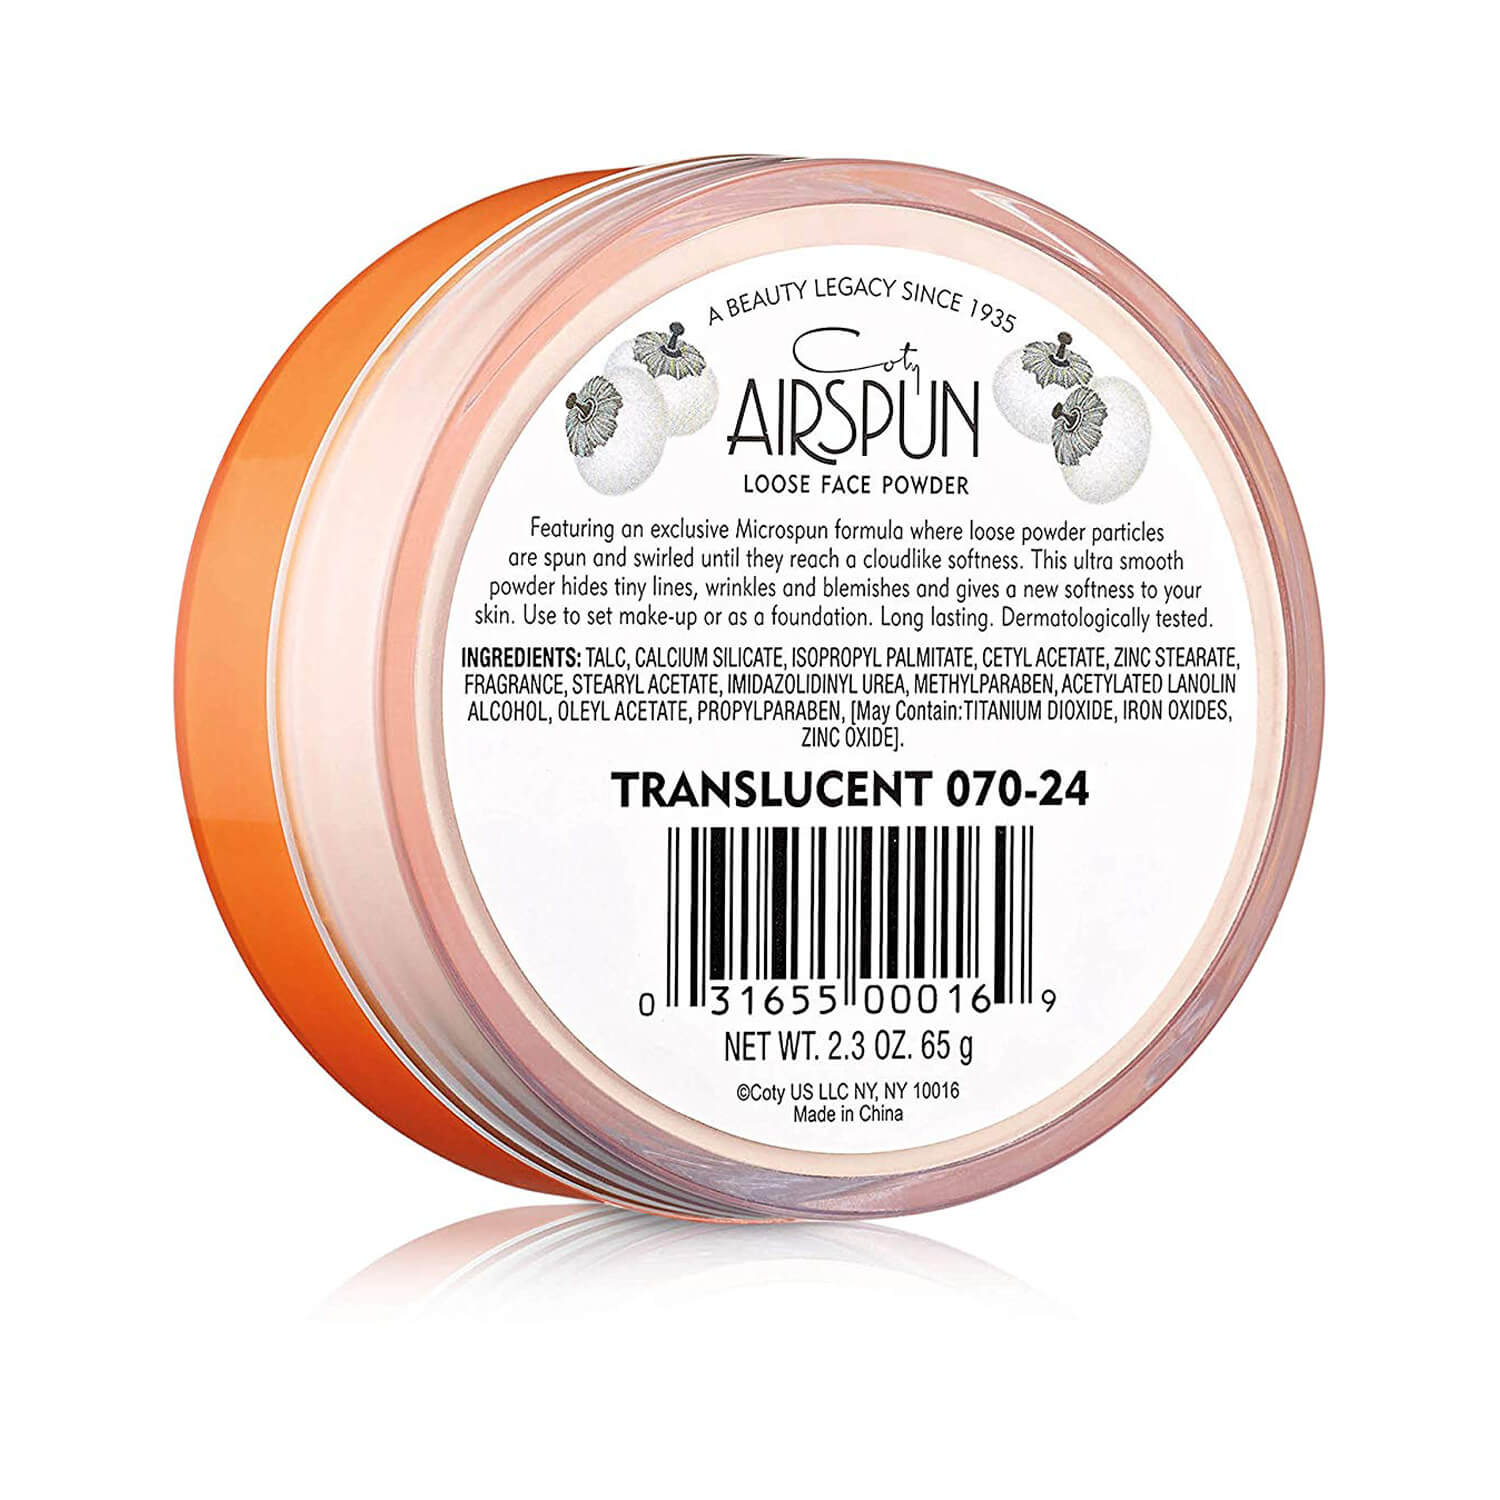 Coty Airspun Loose Face Powder Translucent 070-24